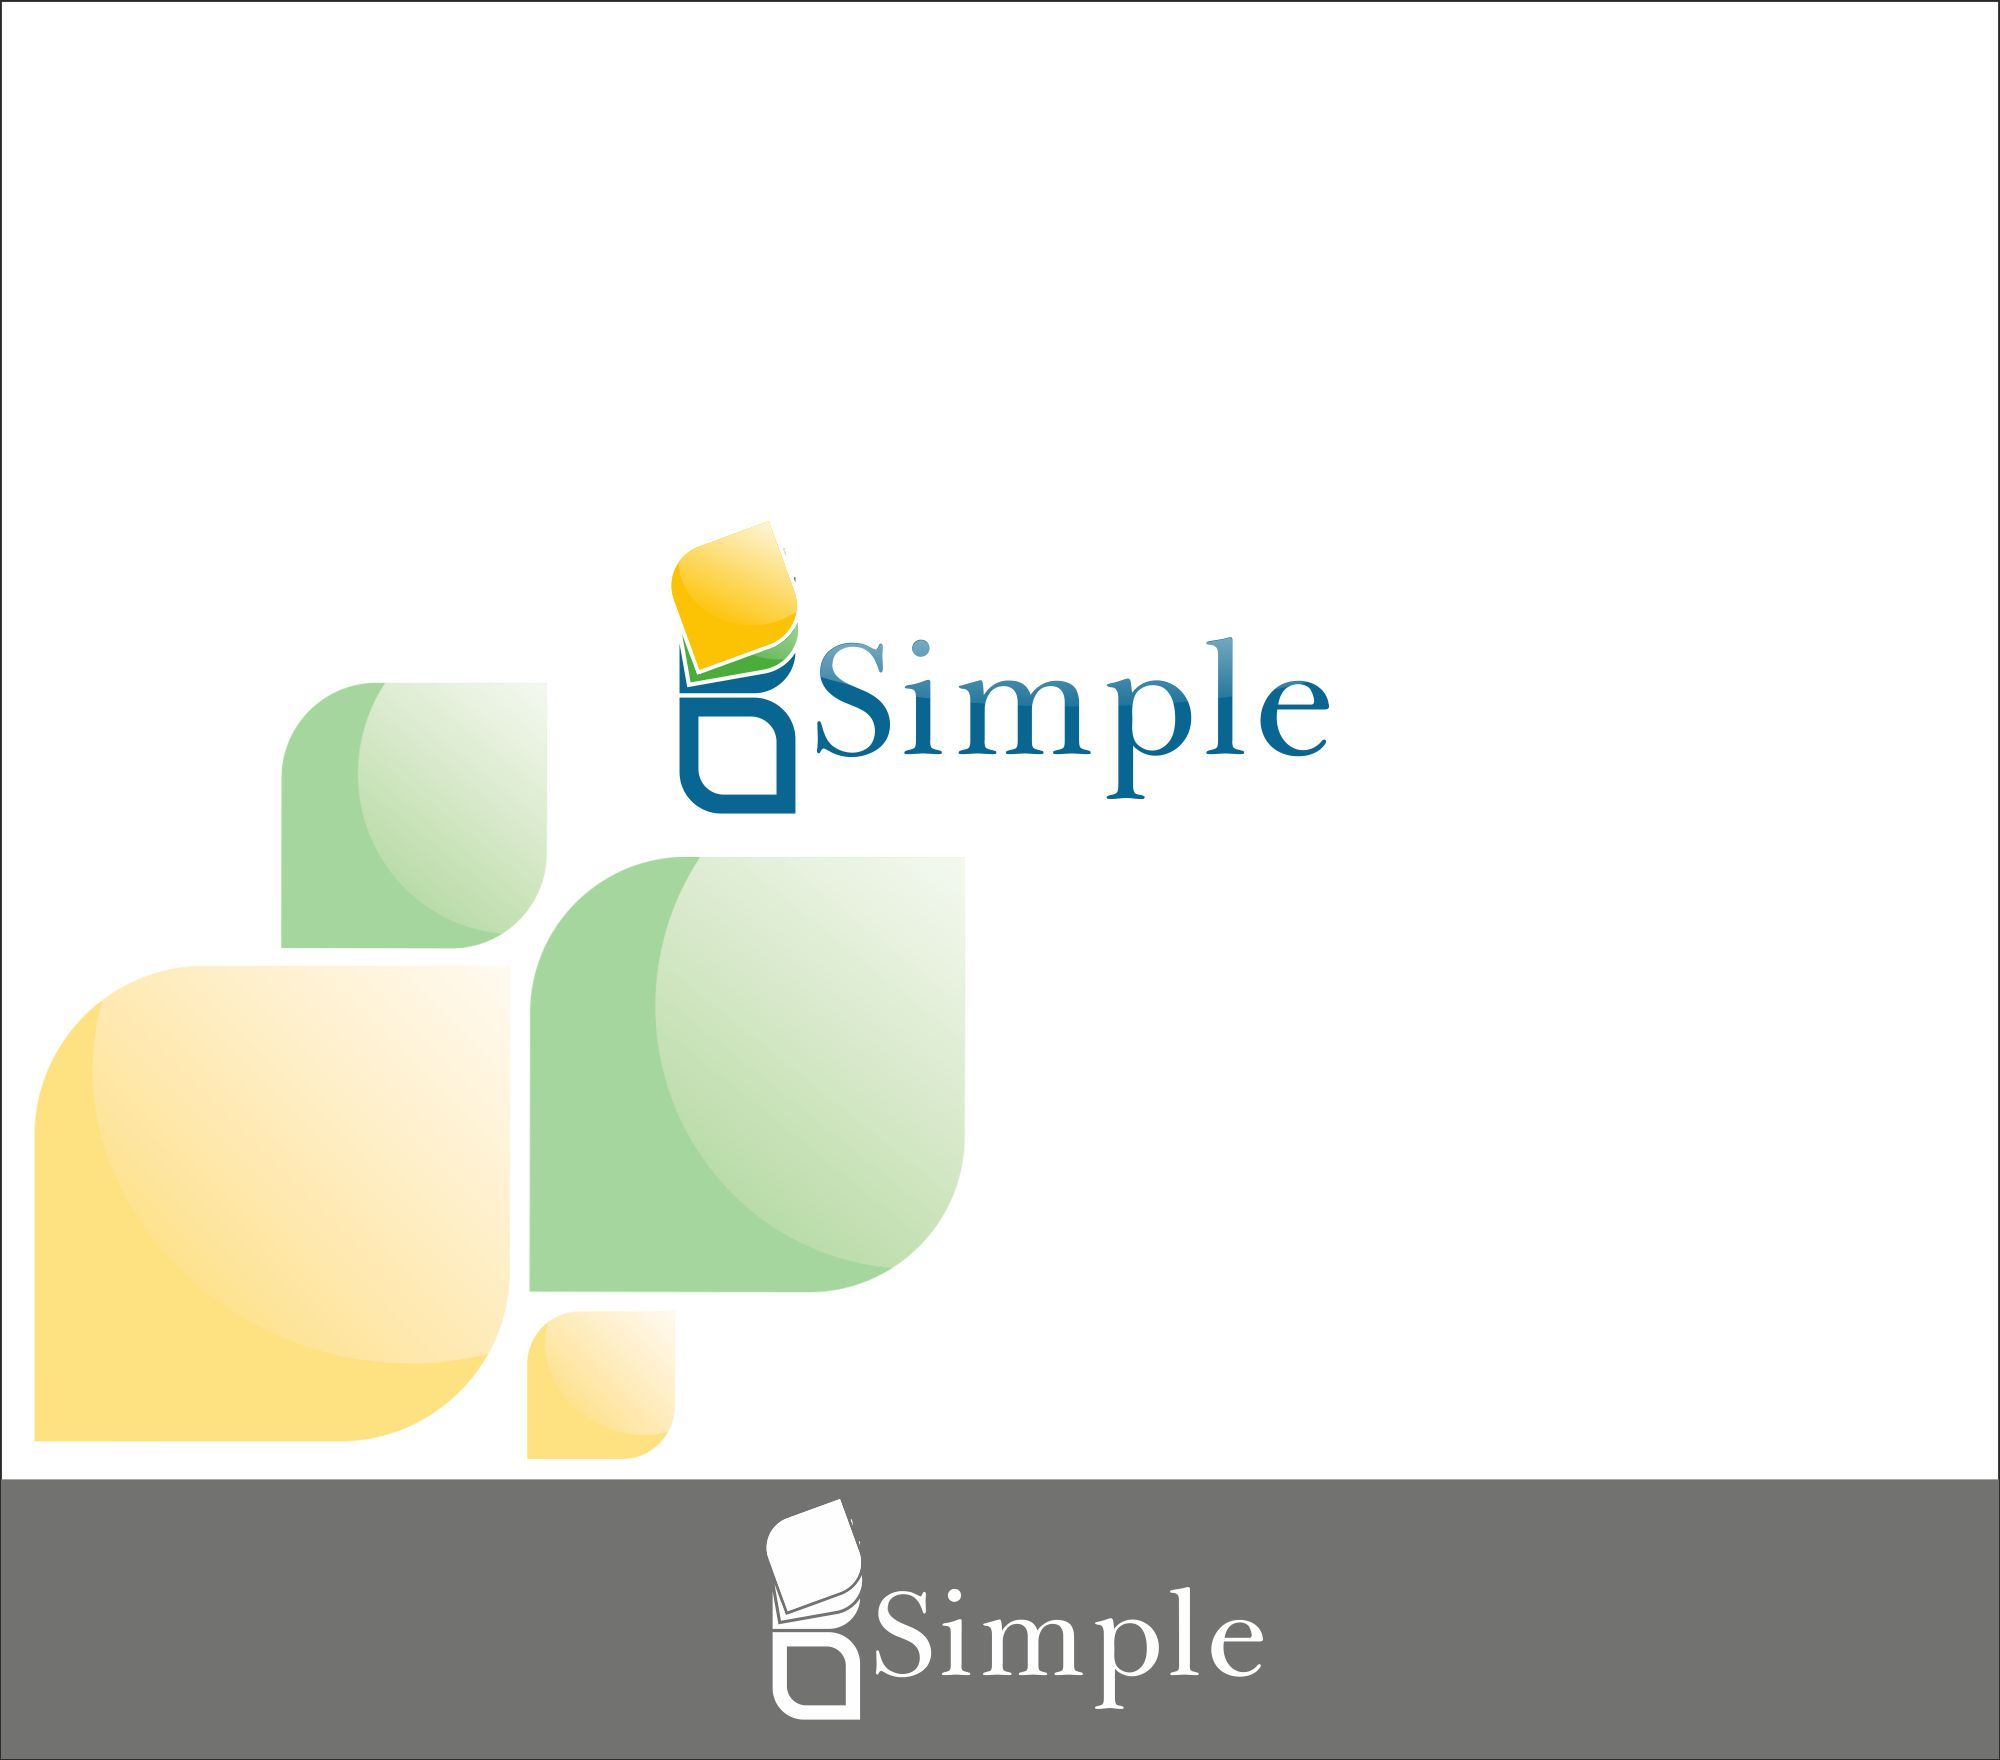 Лого и фирменный стиль для агентства bSimple - дизайнер darkbluecat